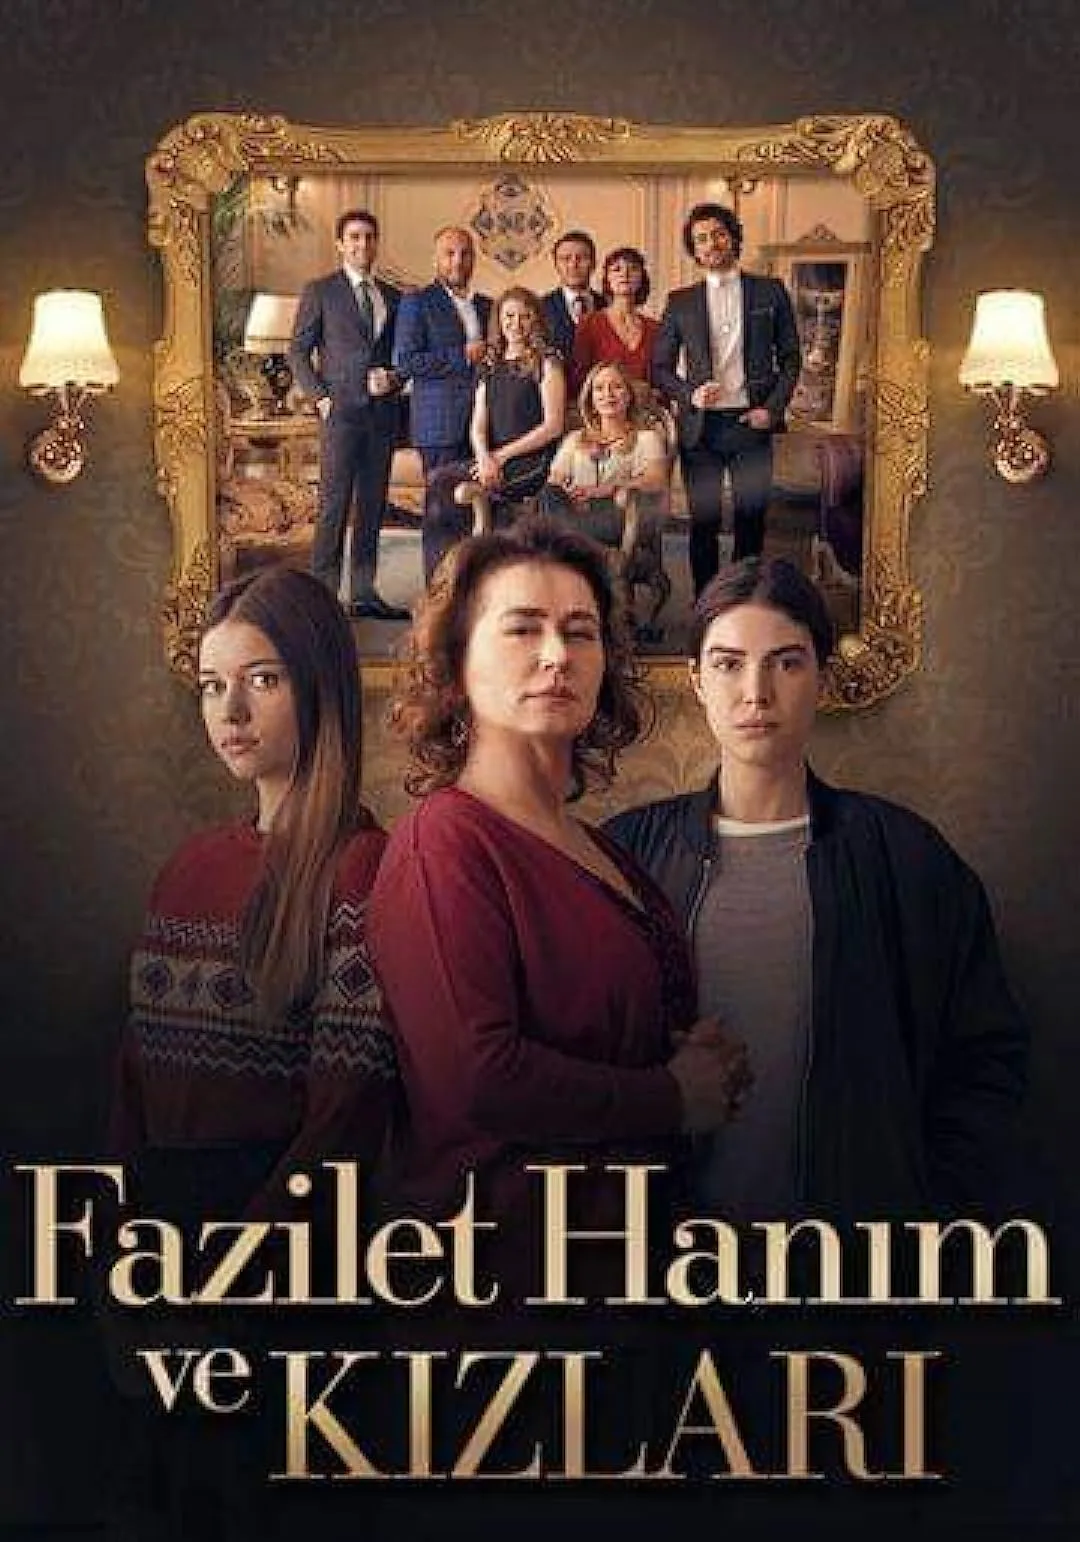 Fazilet Hanim ve Kizlari online subtitrat in romana